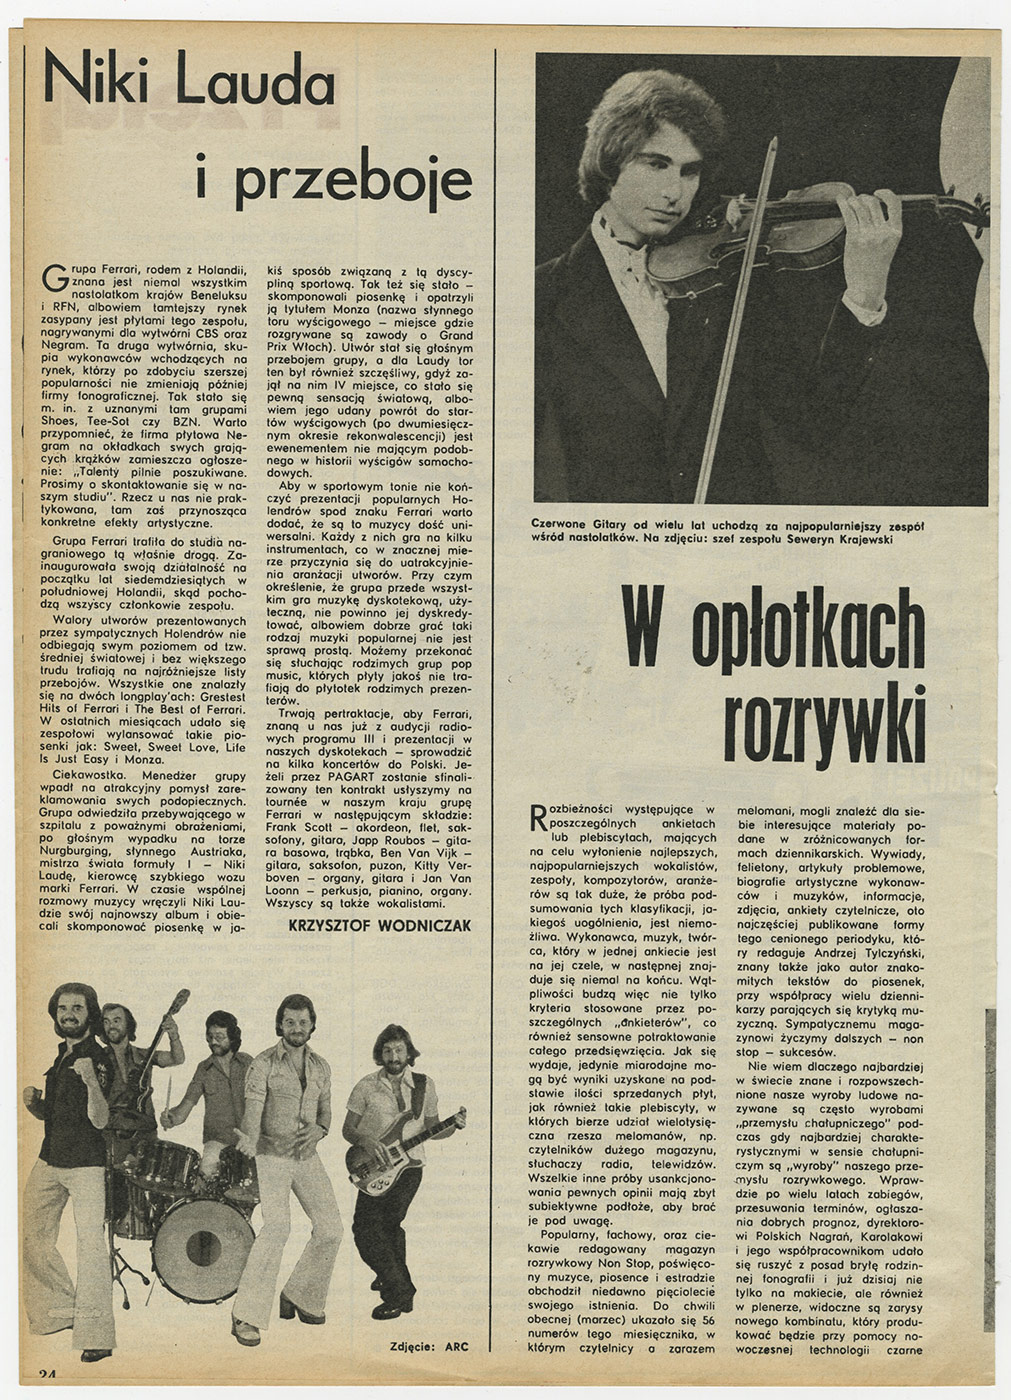 1969-1978_Panorama_1977_w_oplotkach_rozrywki_01